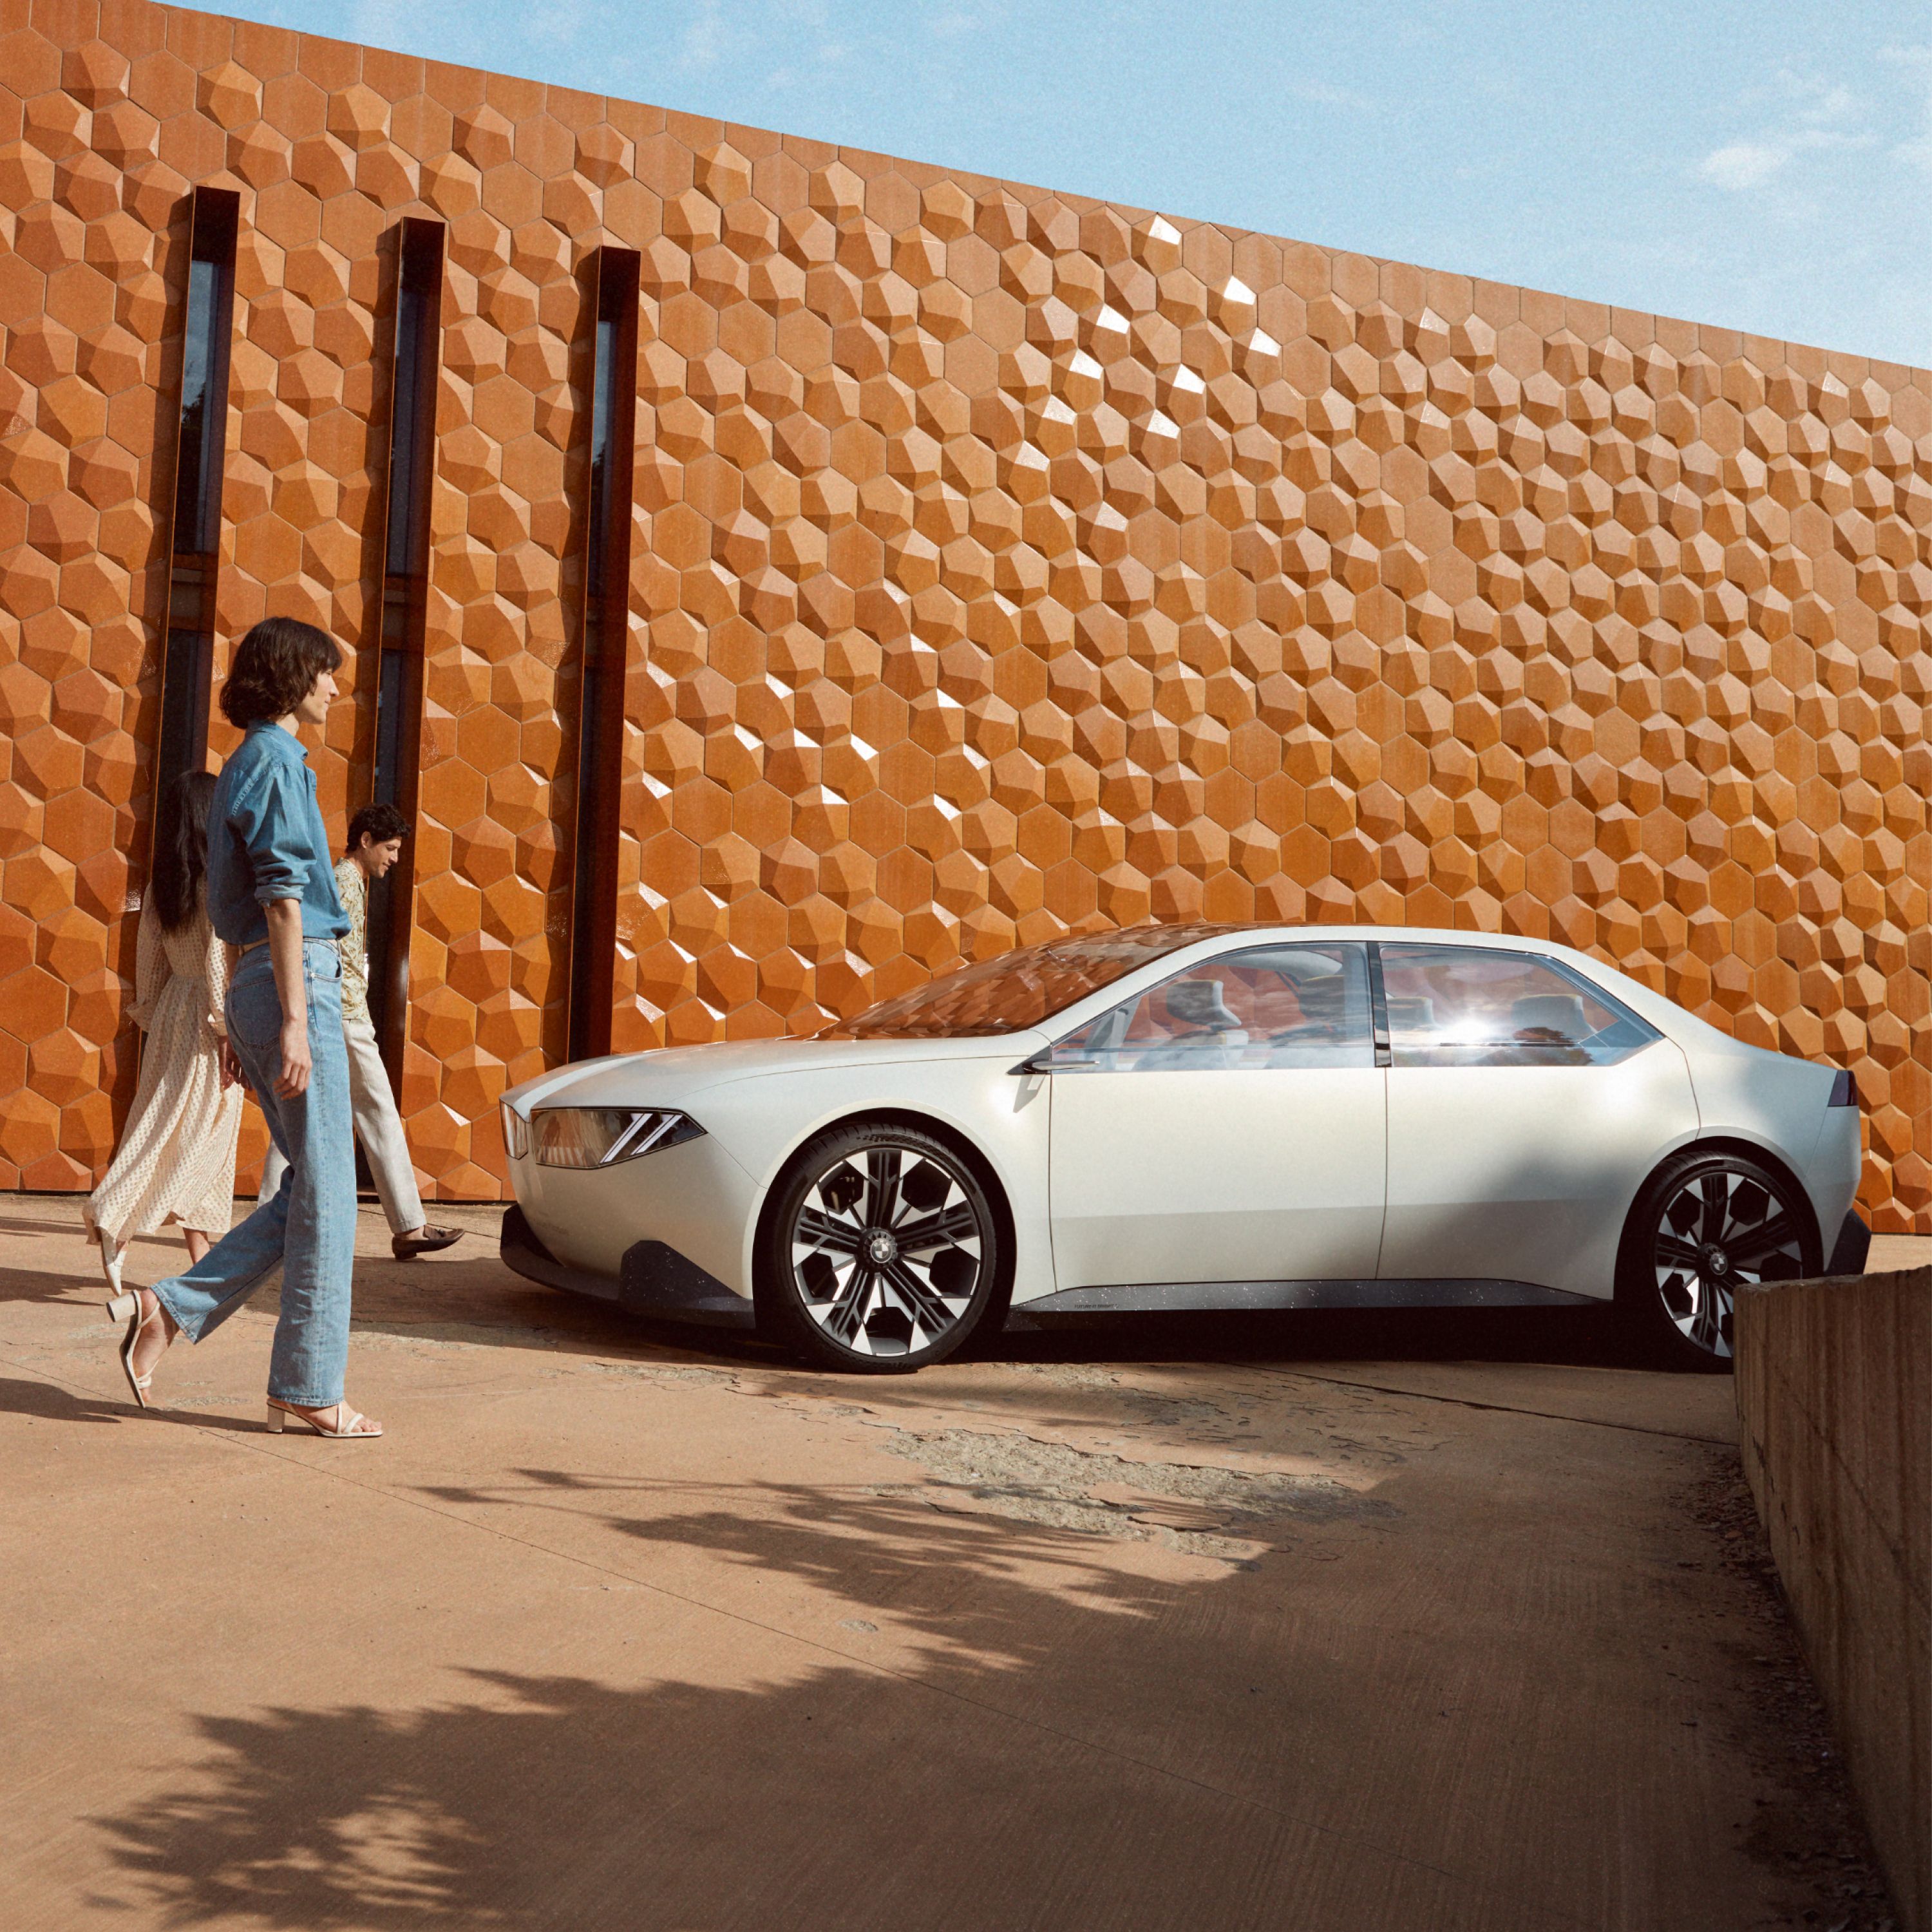 2023 BMW 비전 뉴 클래스 컨셉카 외부 4/5 측면뷰, 벽 앞에 주차, 여성 모델 1명